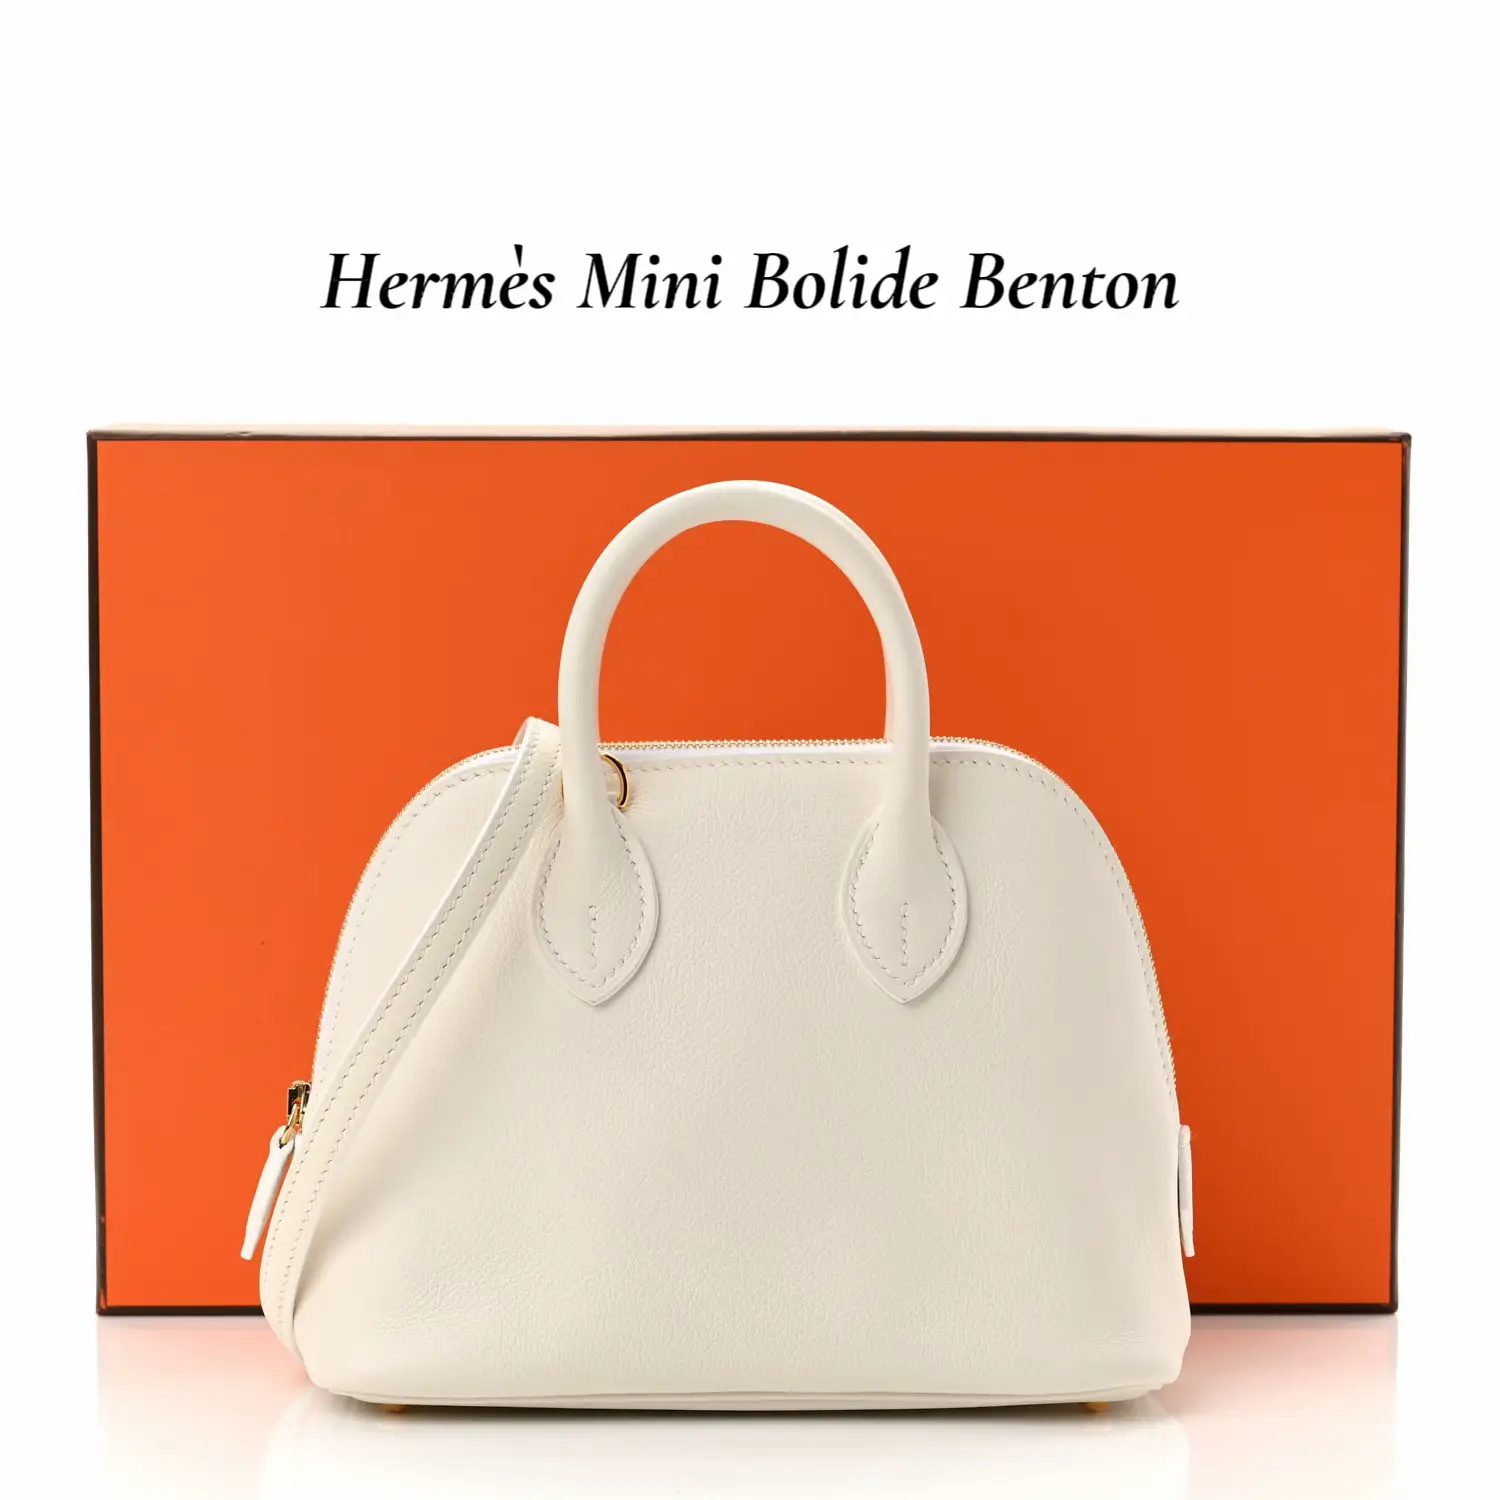 Vestiaire Collective: Buy & sell designer second-hand fashion.  Louis  vuitton laptop bag, Canvas laptop bag, Accessories bags shoes